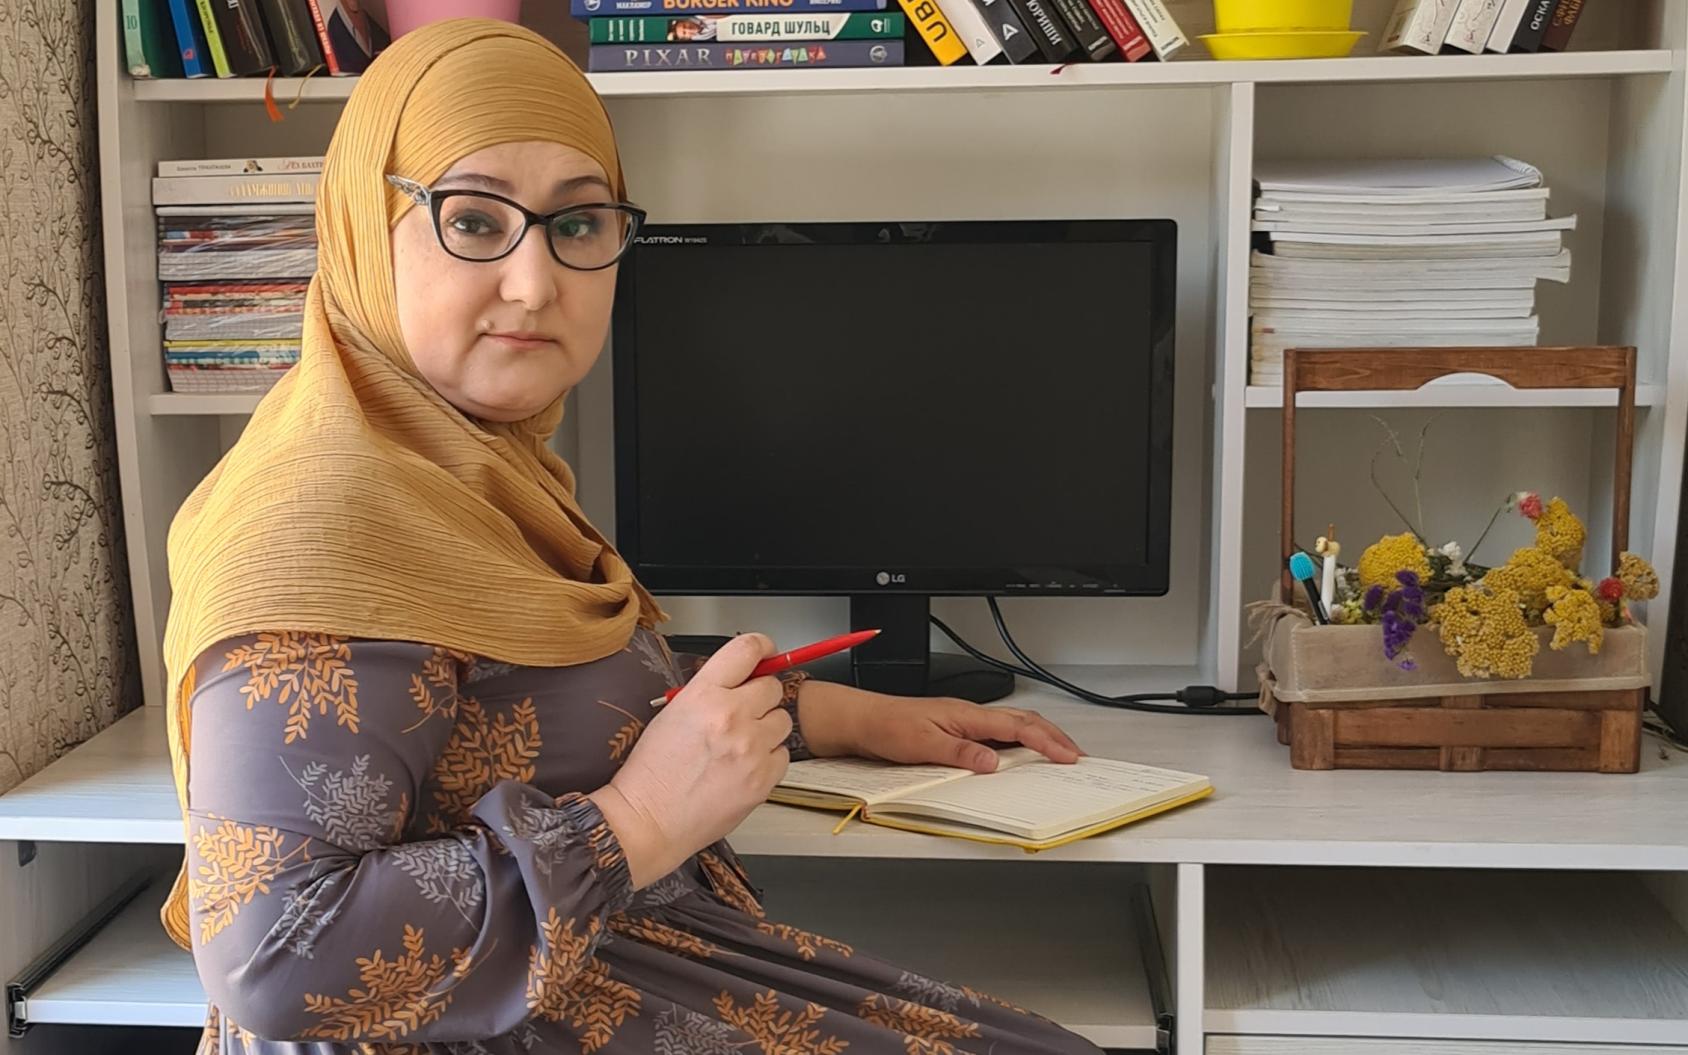 امرأة تجلس أمام مكتب بالمنزل قرب جهاز كمبيوتر وعدد من الكتب والأوراق.